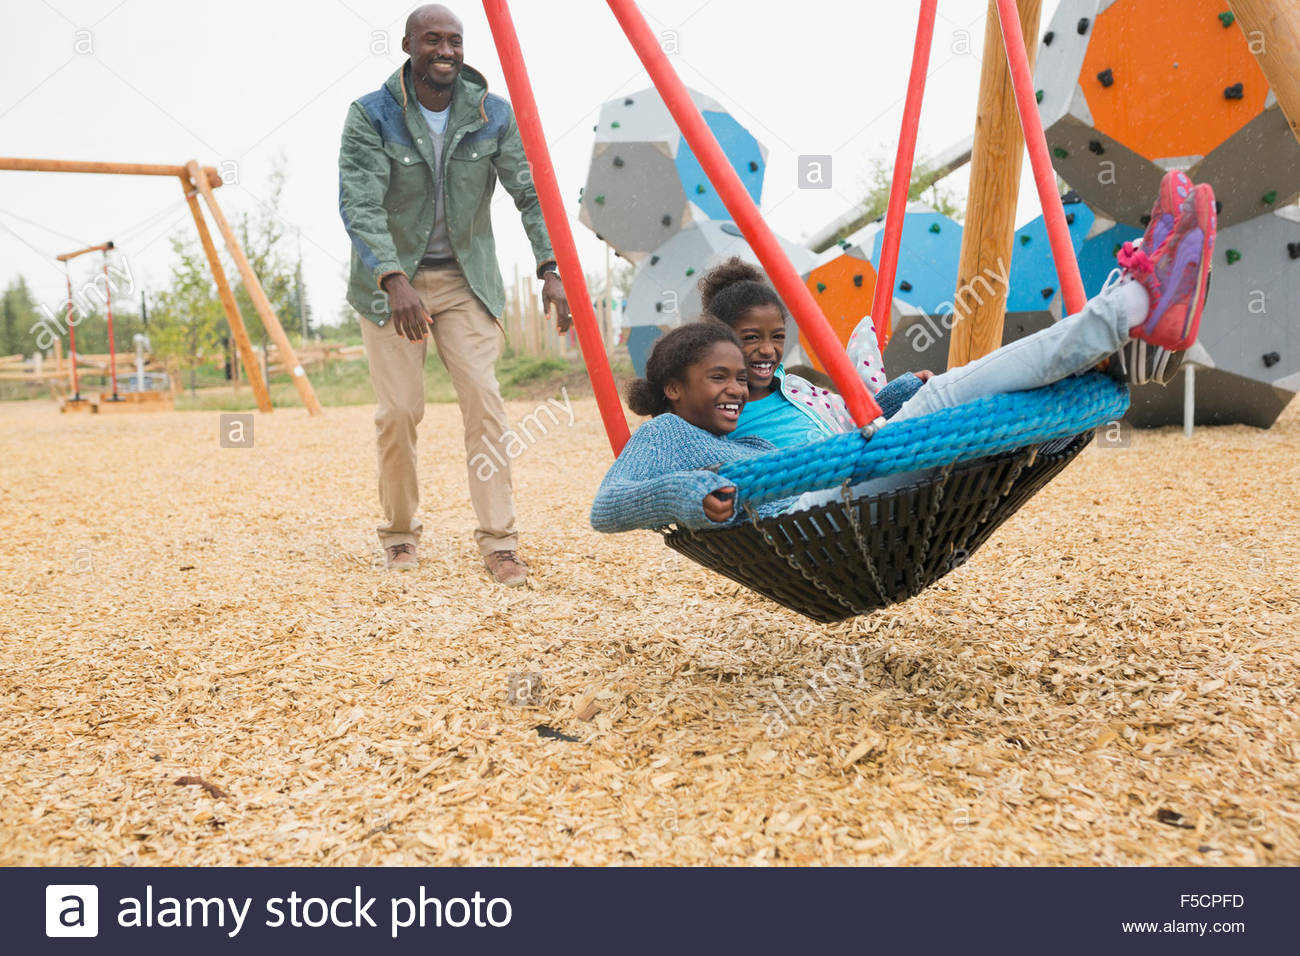 Padre empujando las hijas en swing net en playground Foto de stock